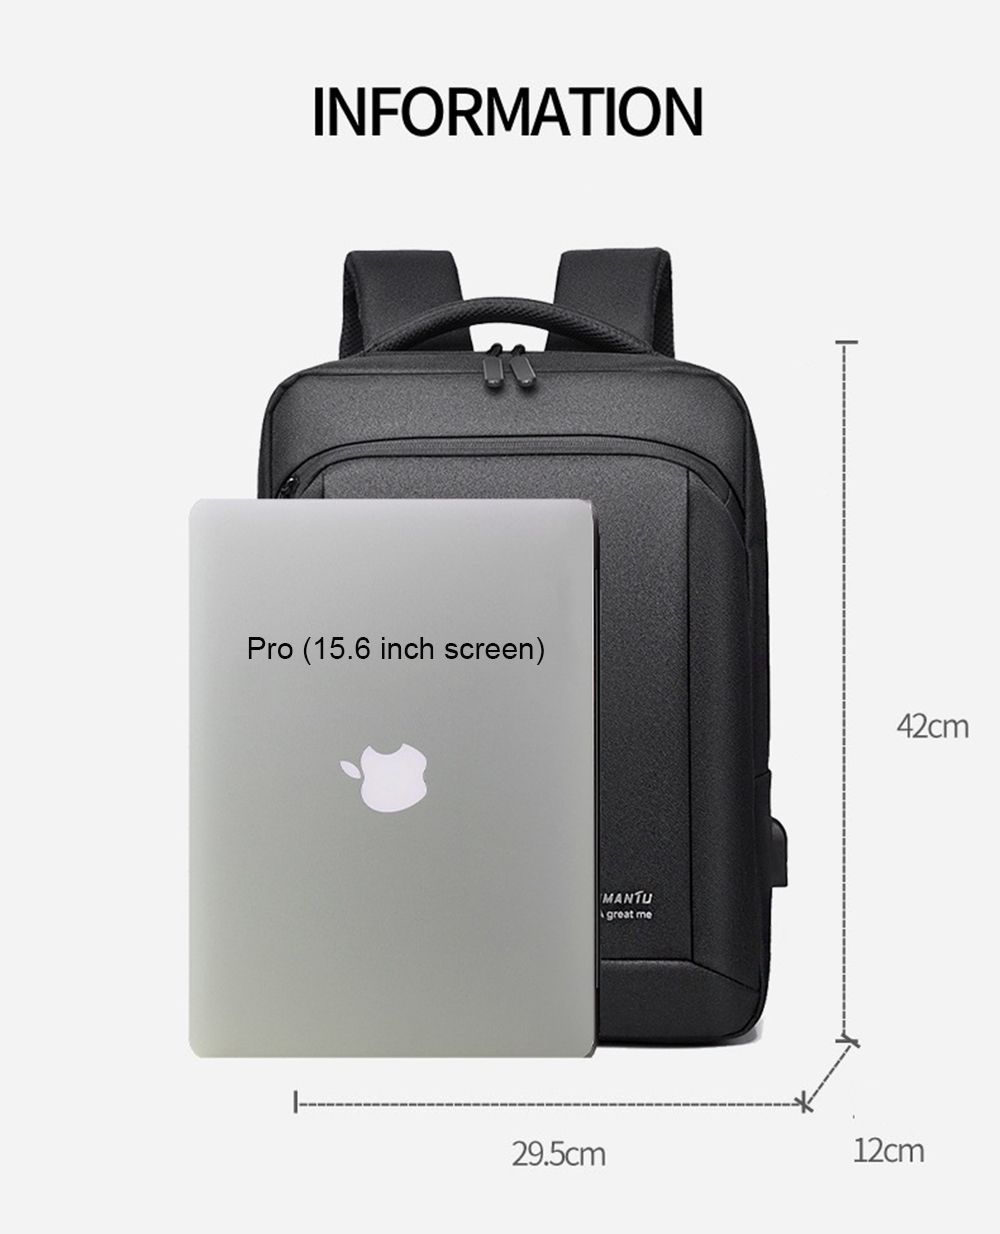 OUMANTU-9007-Business-Backpack-Laptop-Bag-Male-Shoulders-Storage-Bag-with-USB-Waterproof-Schoolbag-f-1731659